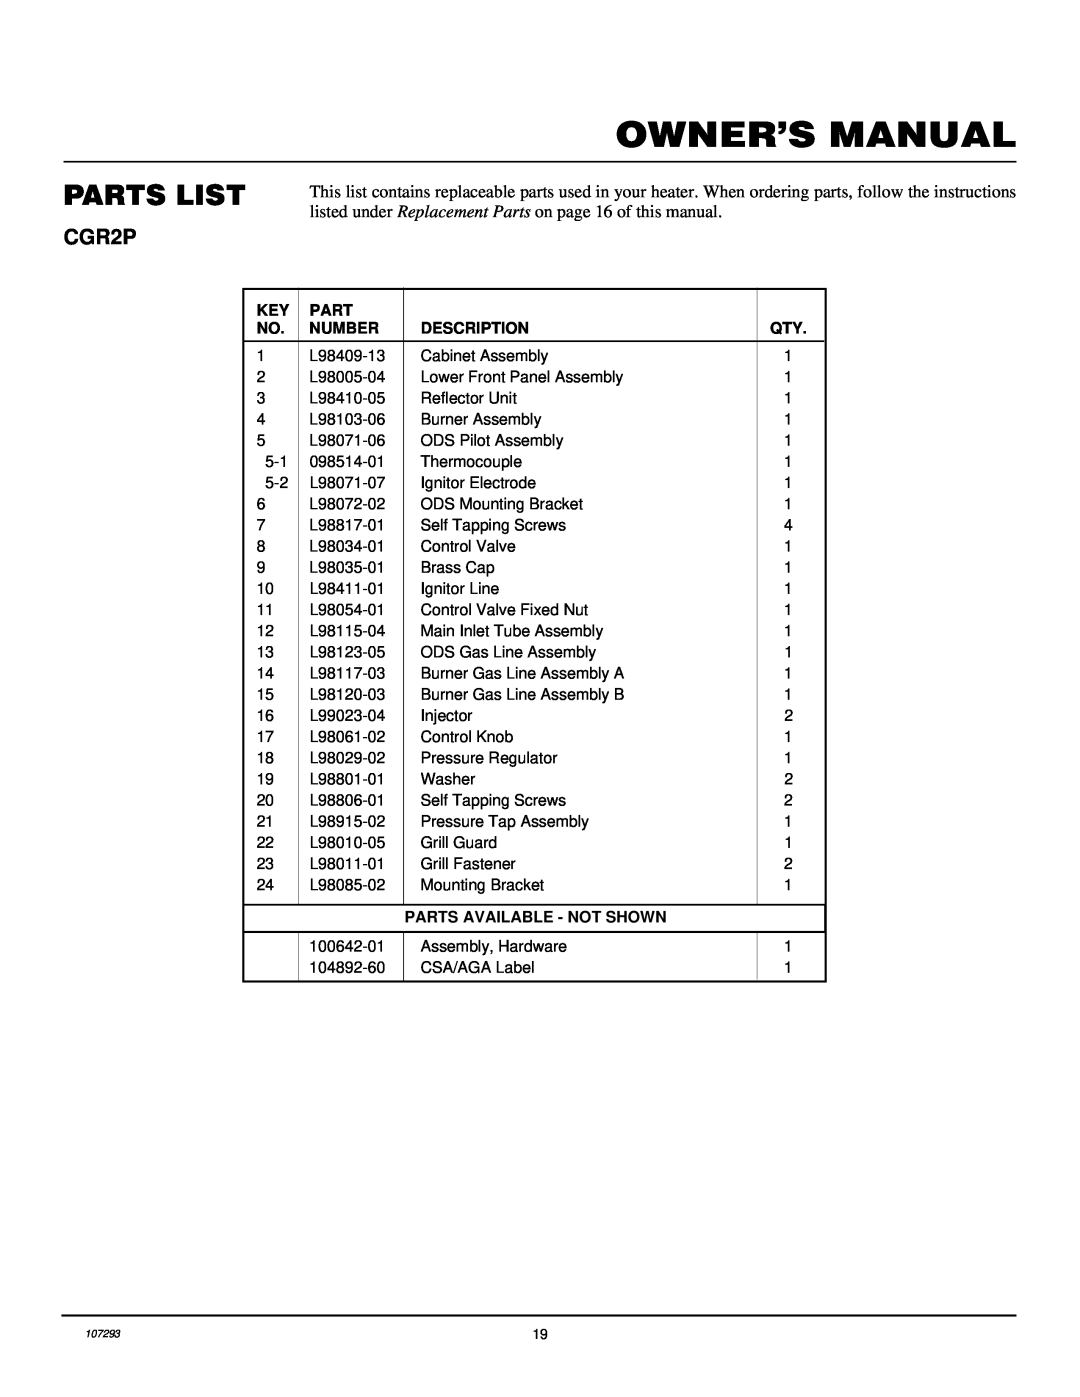 Desa CGR2P installation manual Parts List, Number, Description, Parts Available - Not Shown 